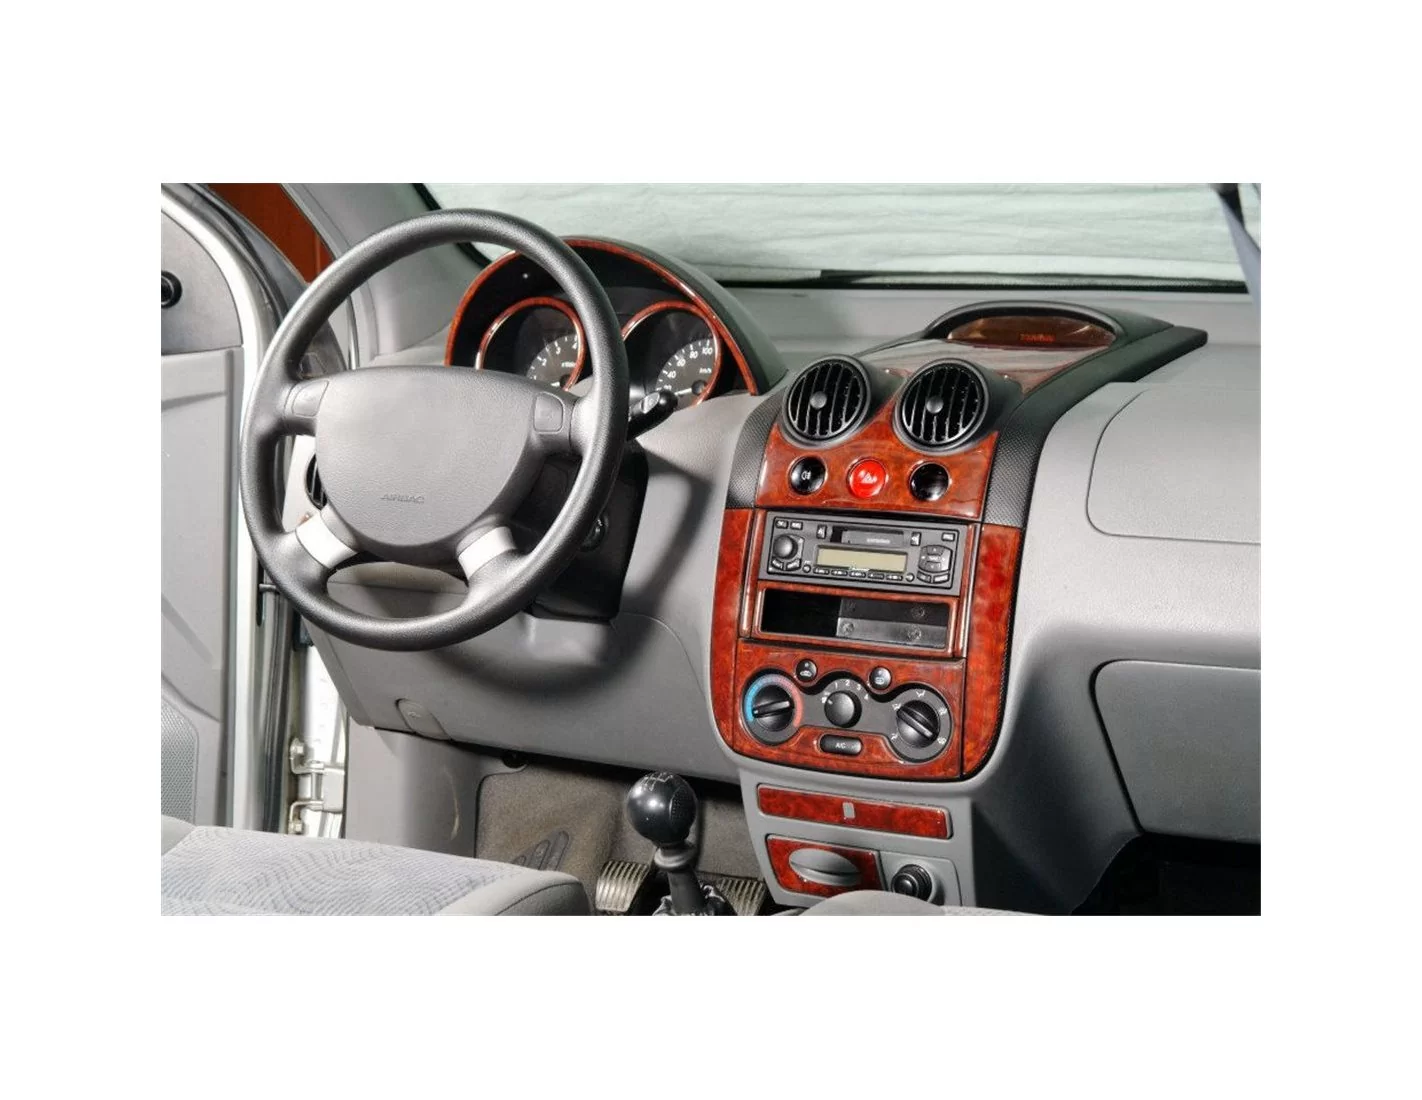 Chevrolet Aveo 03.04-01.06 3M 3D Interior Dashboard Trim Kit Dash Trim Dekor 29-Parts